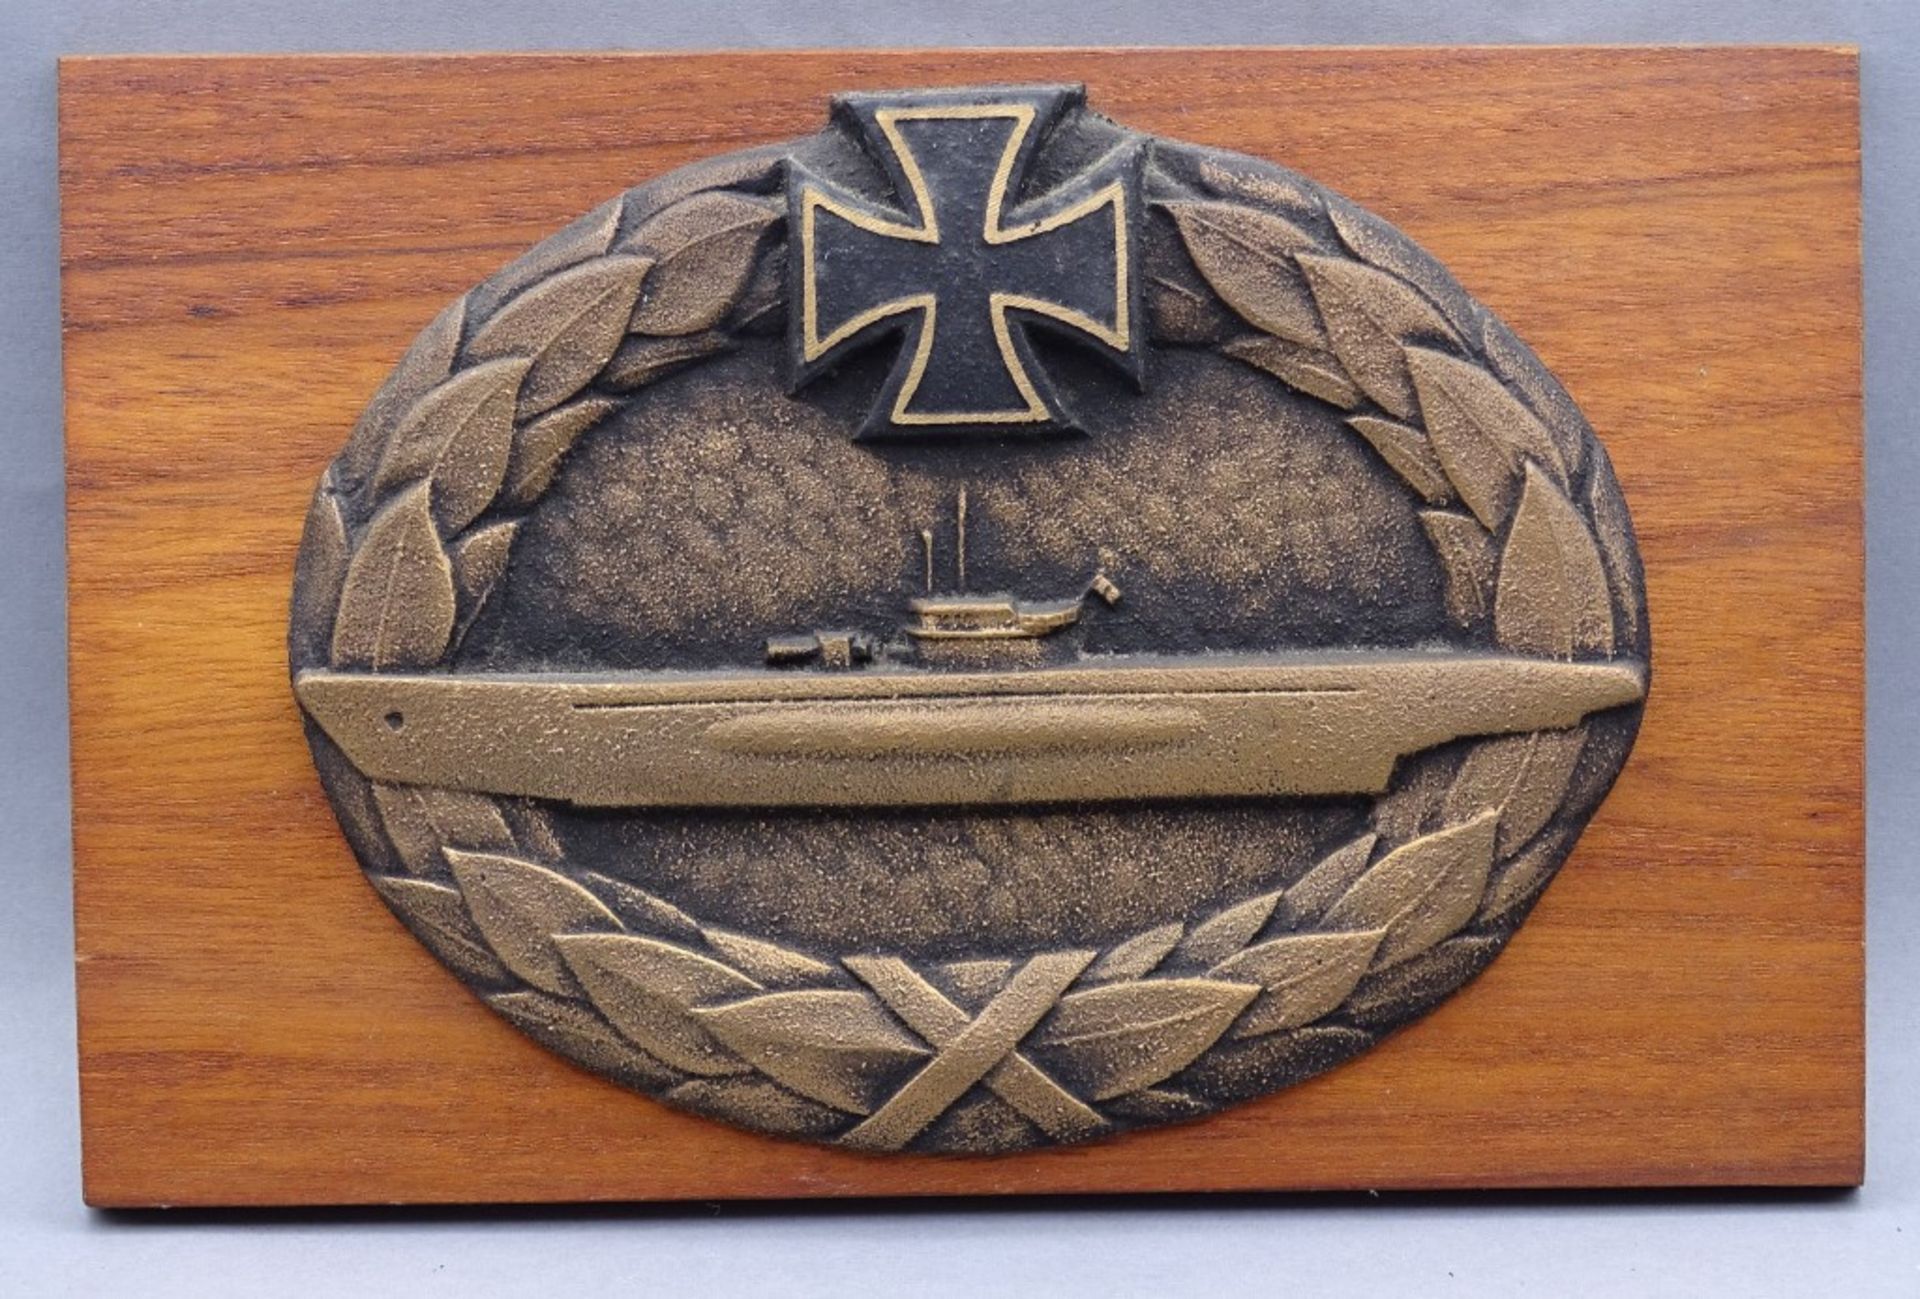 Bronze-Plakette mit U-Boot und Deutschen Kreuz auf Holz, 14x22 cm